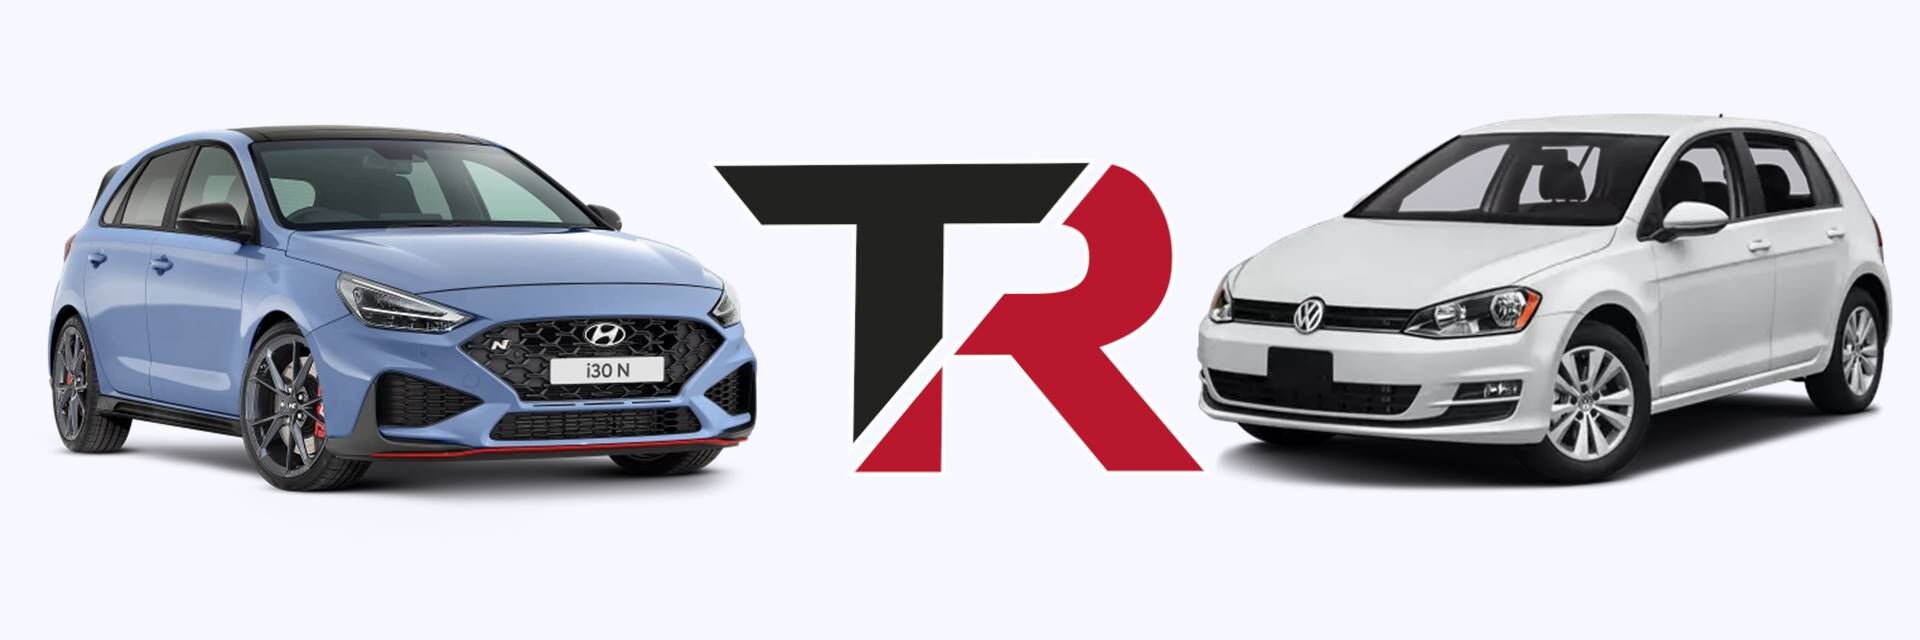 Comparativa Hyundai i30 y Volkswagen Golf